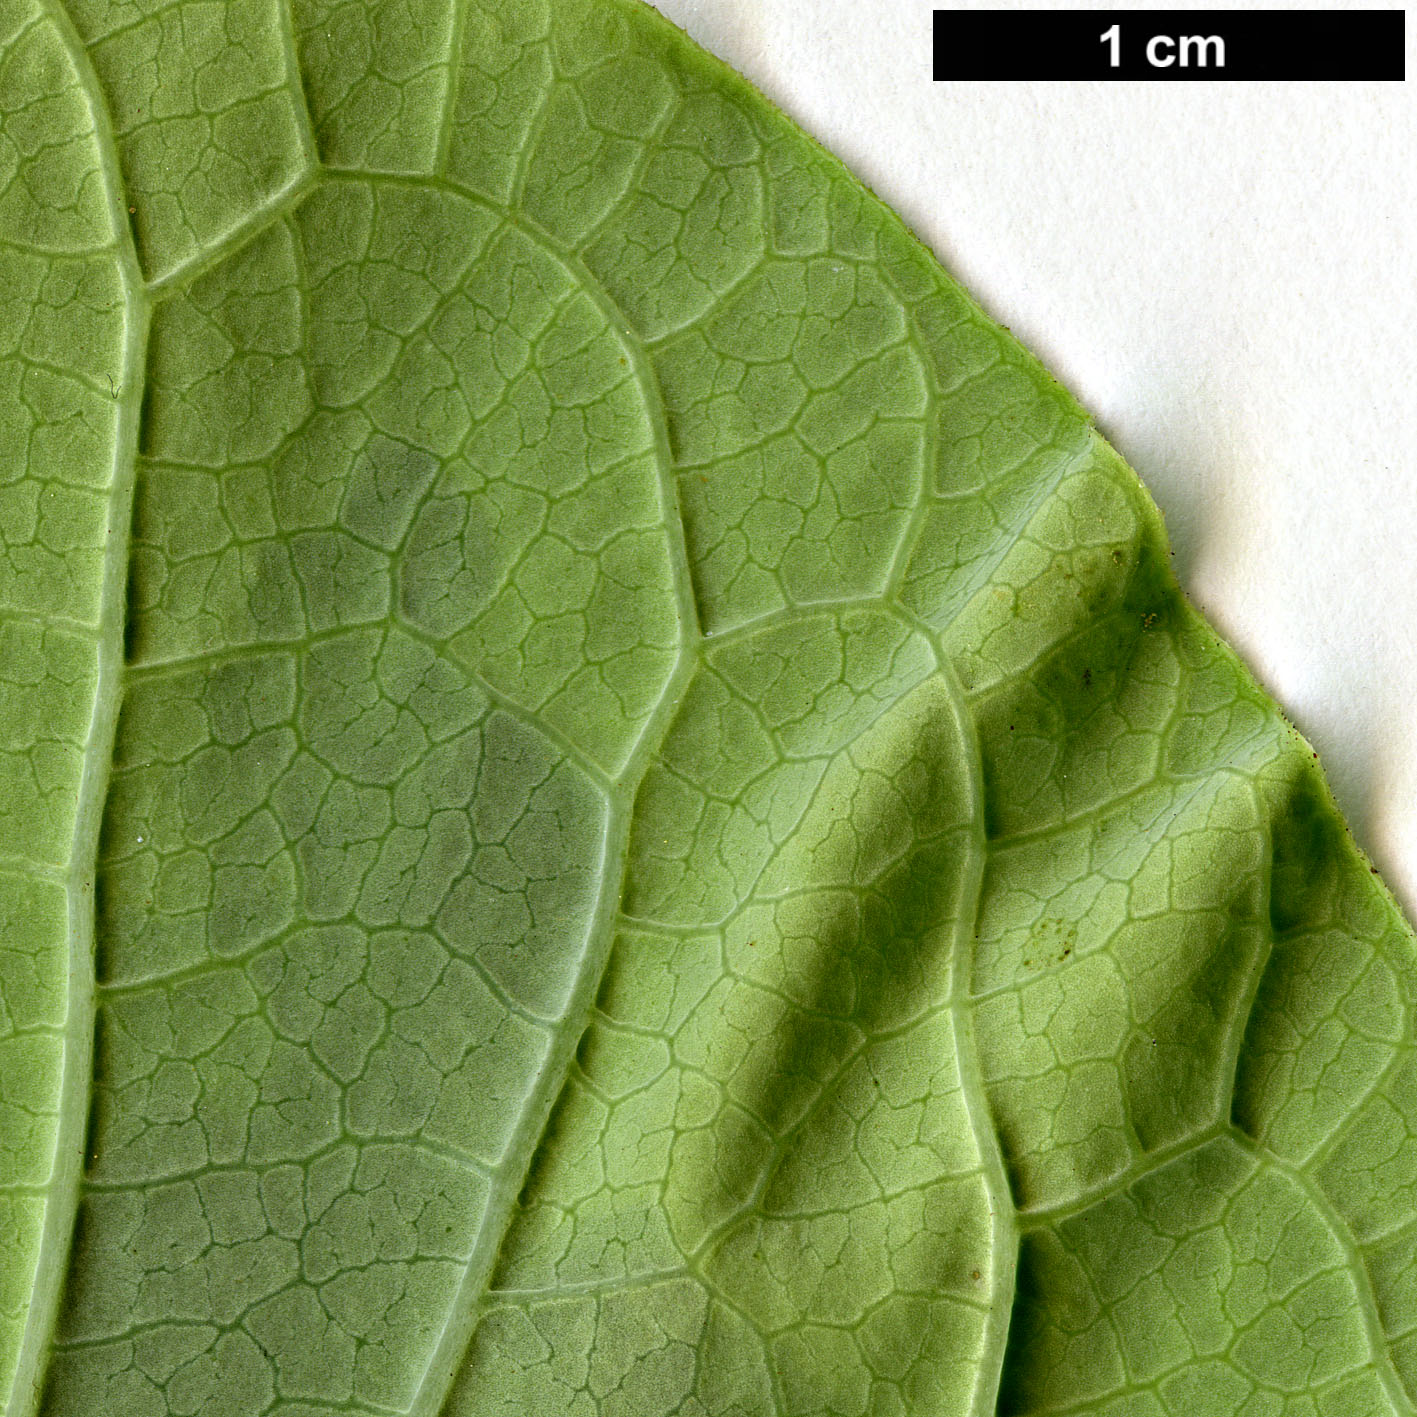 High resolution image: Family: Oleaceae - Genus: Syringa - Taxon: emodi - SpeciesSub: 'Aureovariegata'